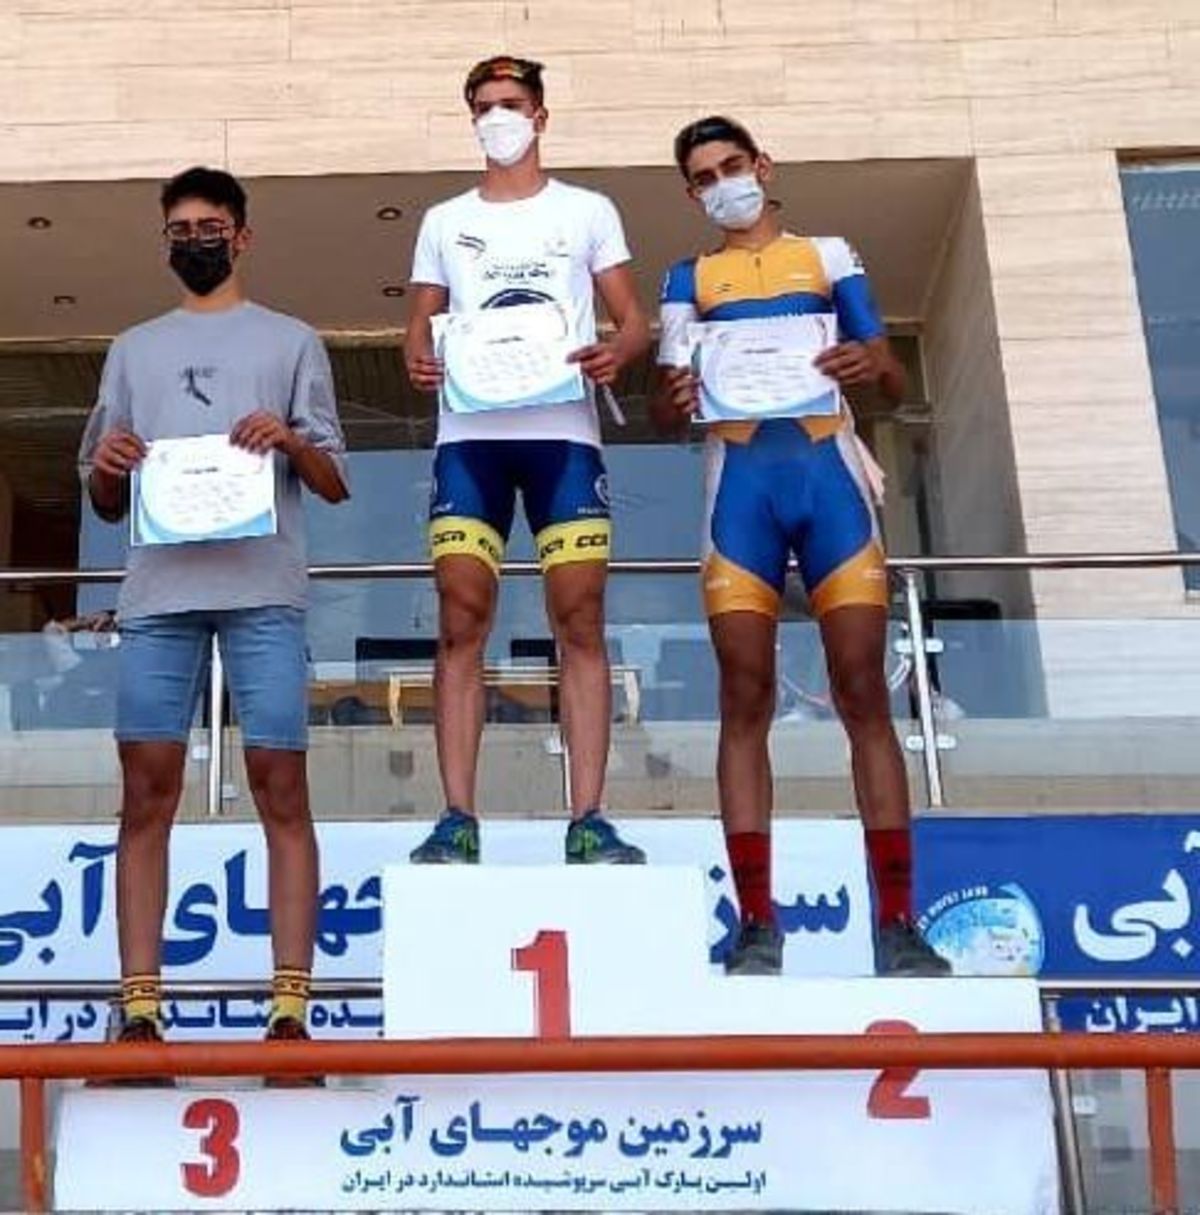 تیم دوچرخه سواری کرمانشاه یک طلا و ۲ نقره کسب کرد